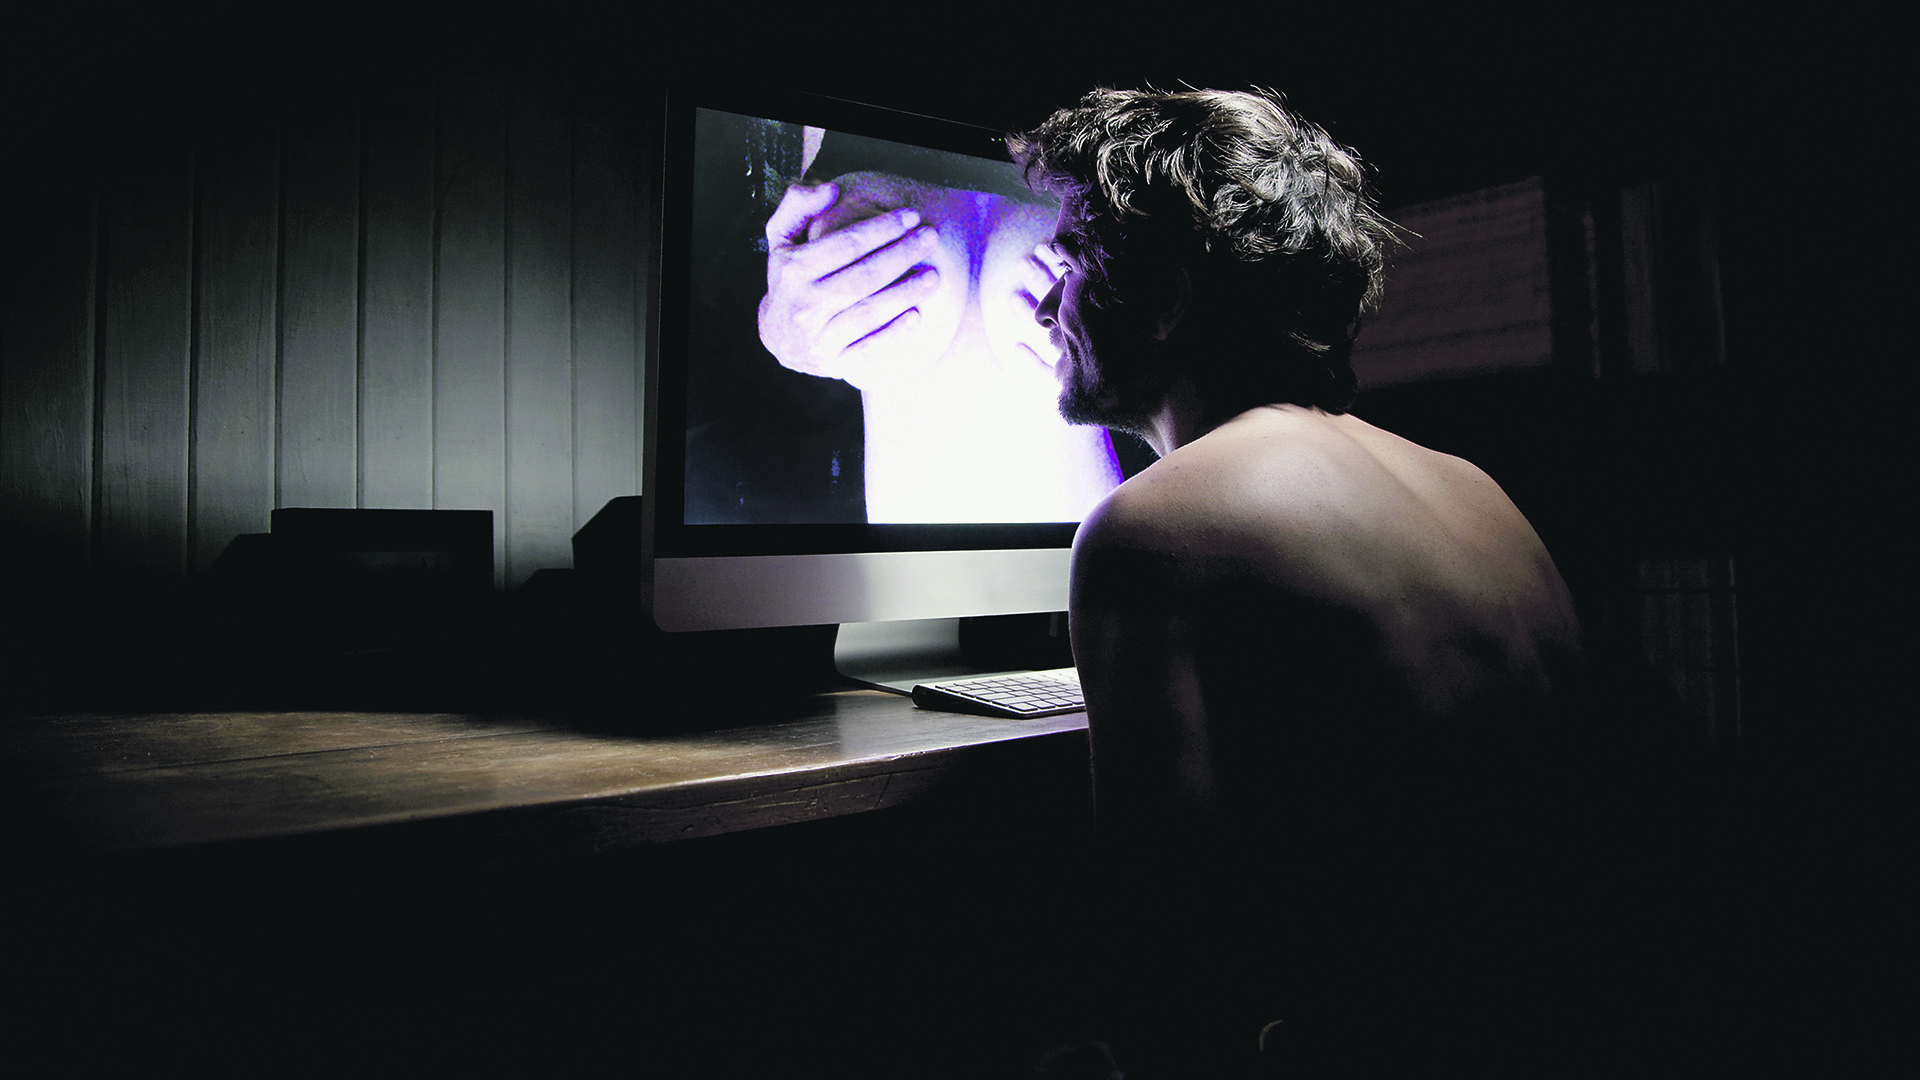 Порно видео безопасное смотреть онлайн бесплатно